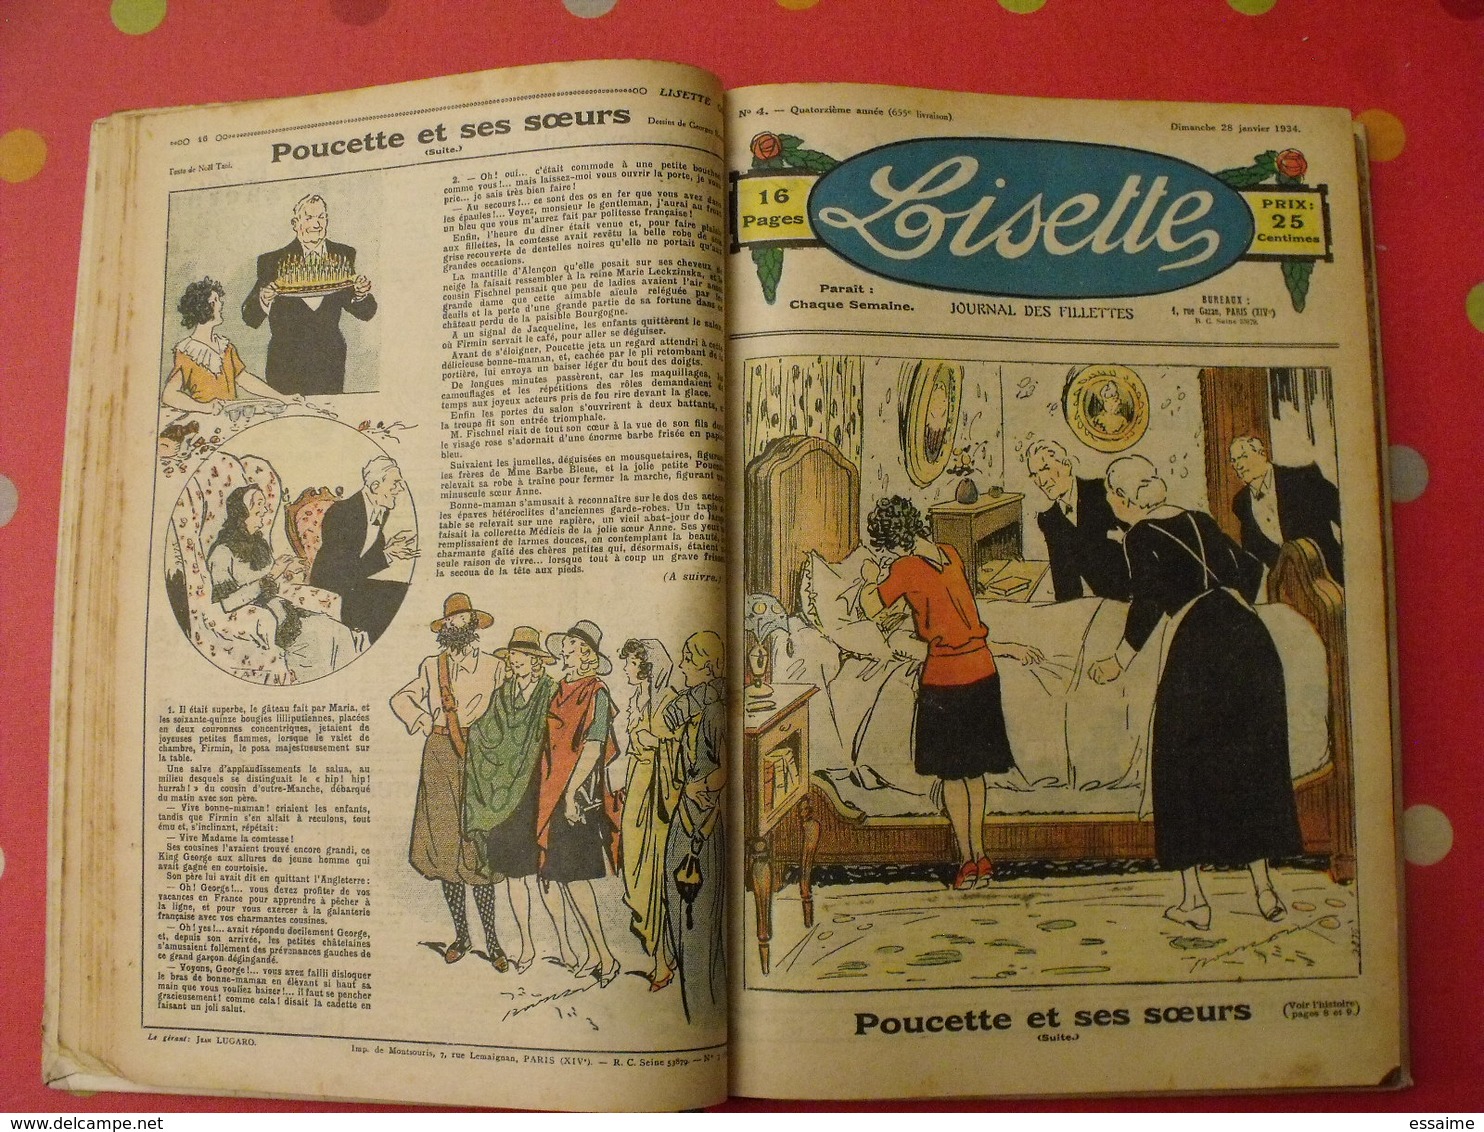 Lisette, album 14 XIV. 1934. recueil reliure. le rallic levesque maitrejean cuvillier bourdin dot petite annie mc clure